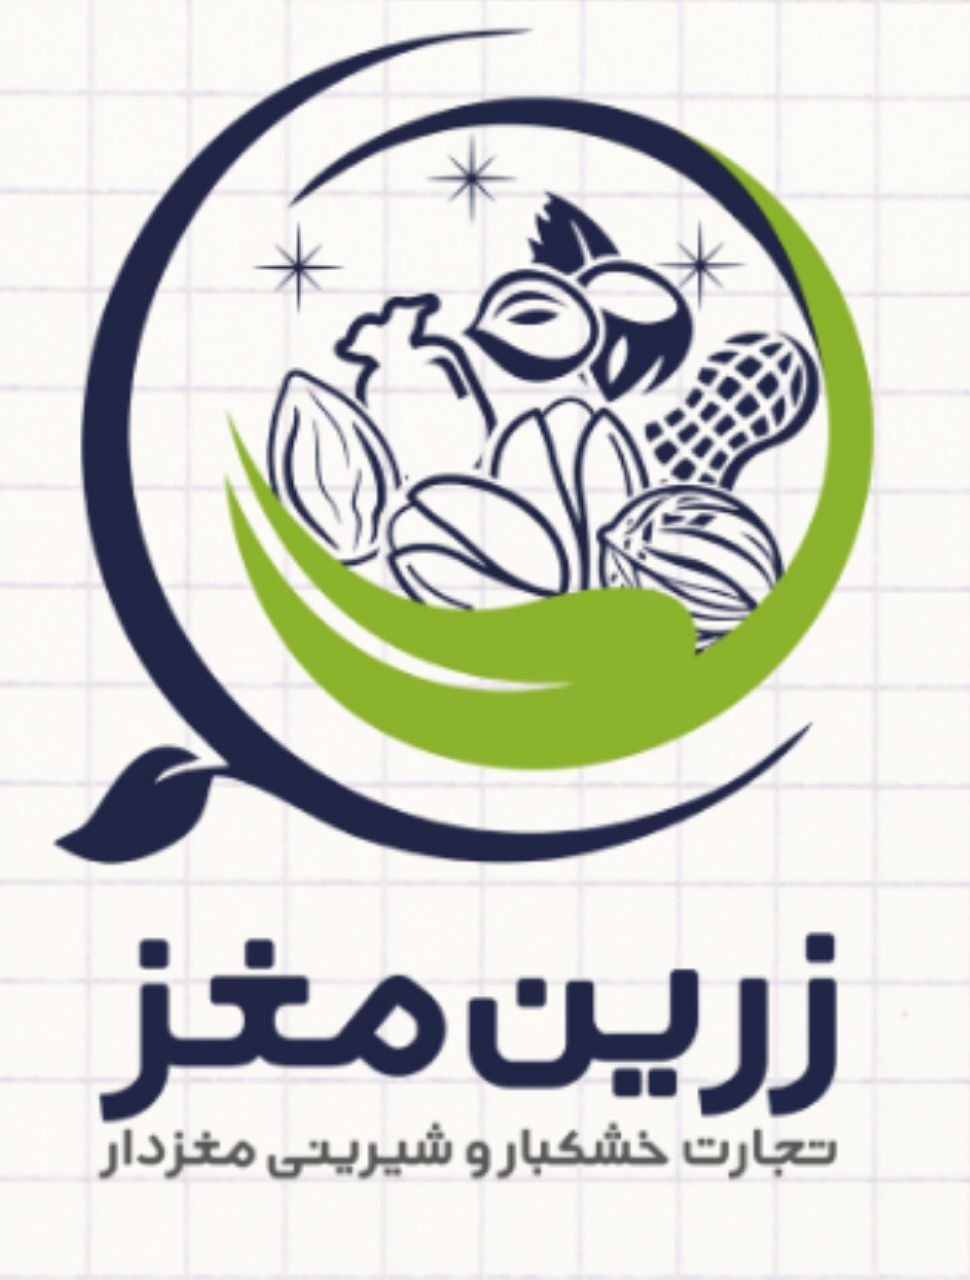 شرکت زرین | مرکز فروش و صادرات بادام پسته گردو فندق کشمش انجیر قیسی ایرانی